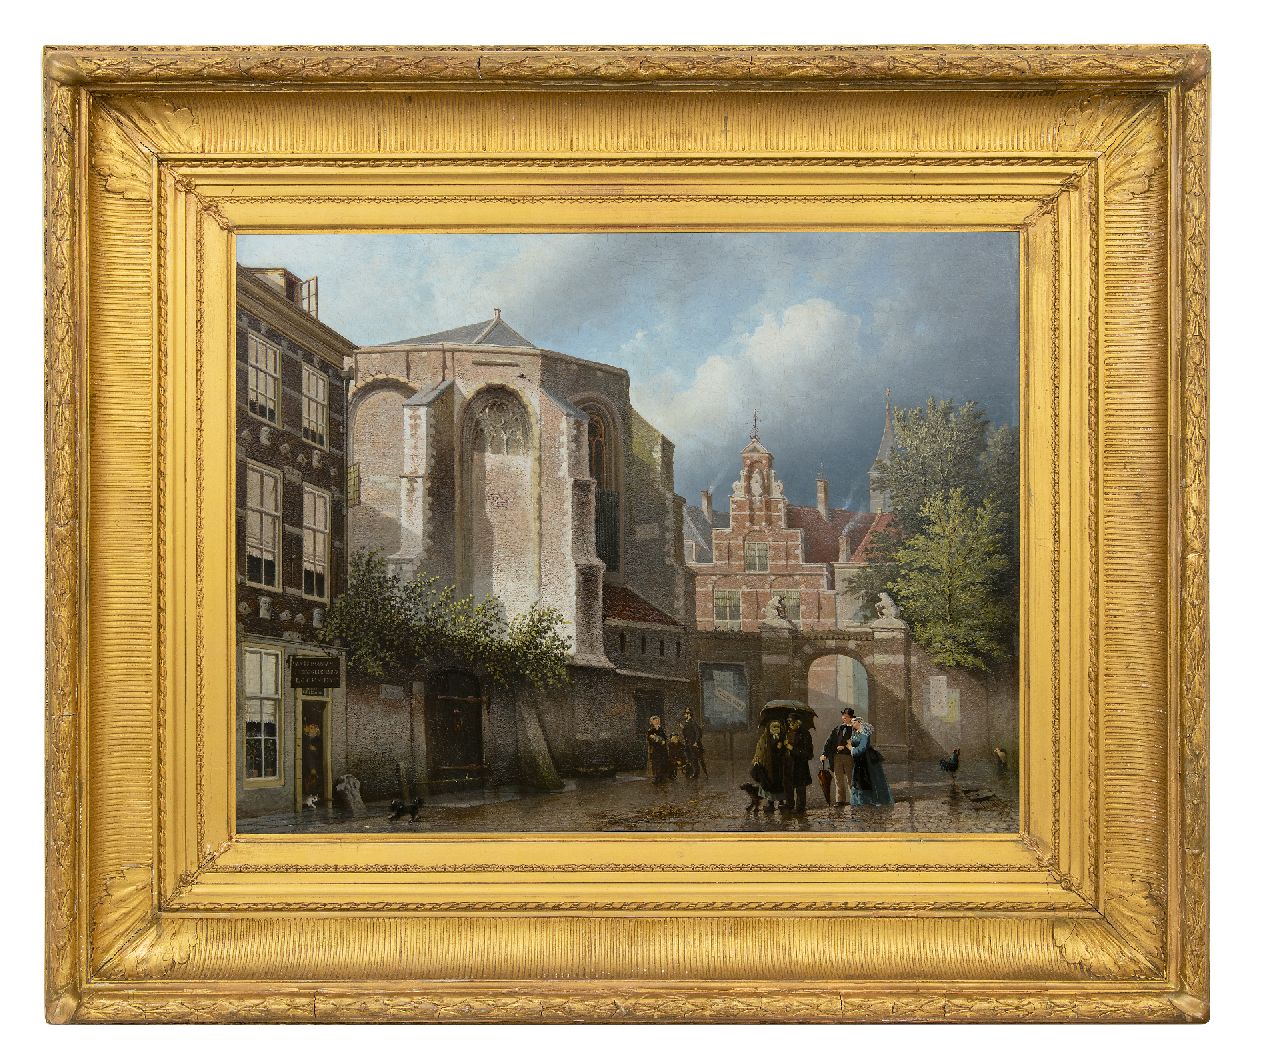 Bles J.  | Joseph Bles | Schilderijen te koop aangeboden | Regen en zonneschijn op een kerkplein, olieverf op paneel 51,9 x 67,9 cm, gesigneerd linksonder